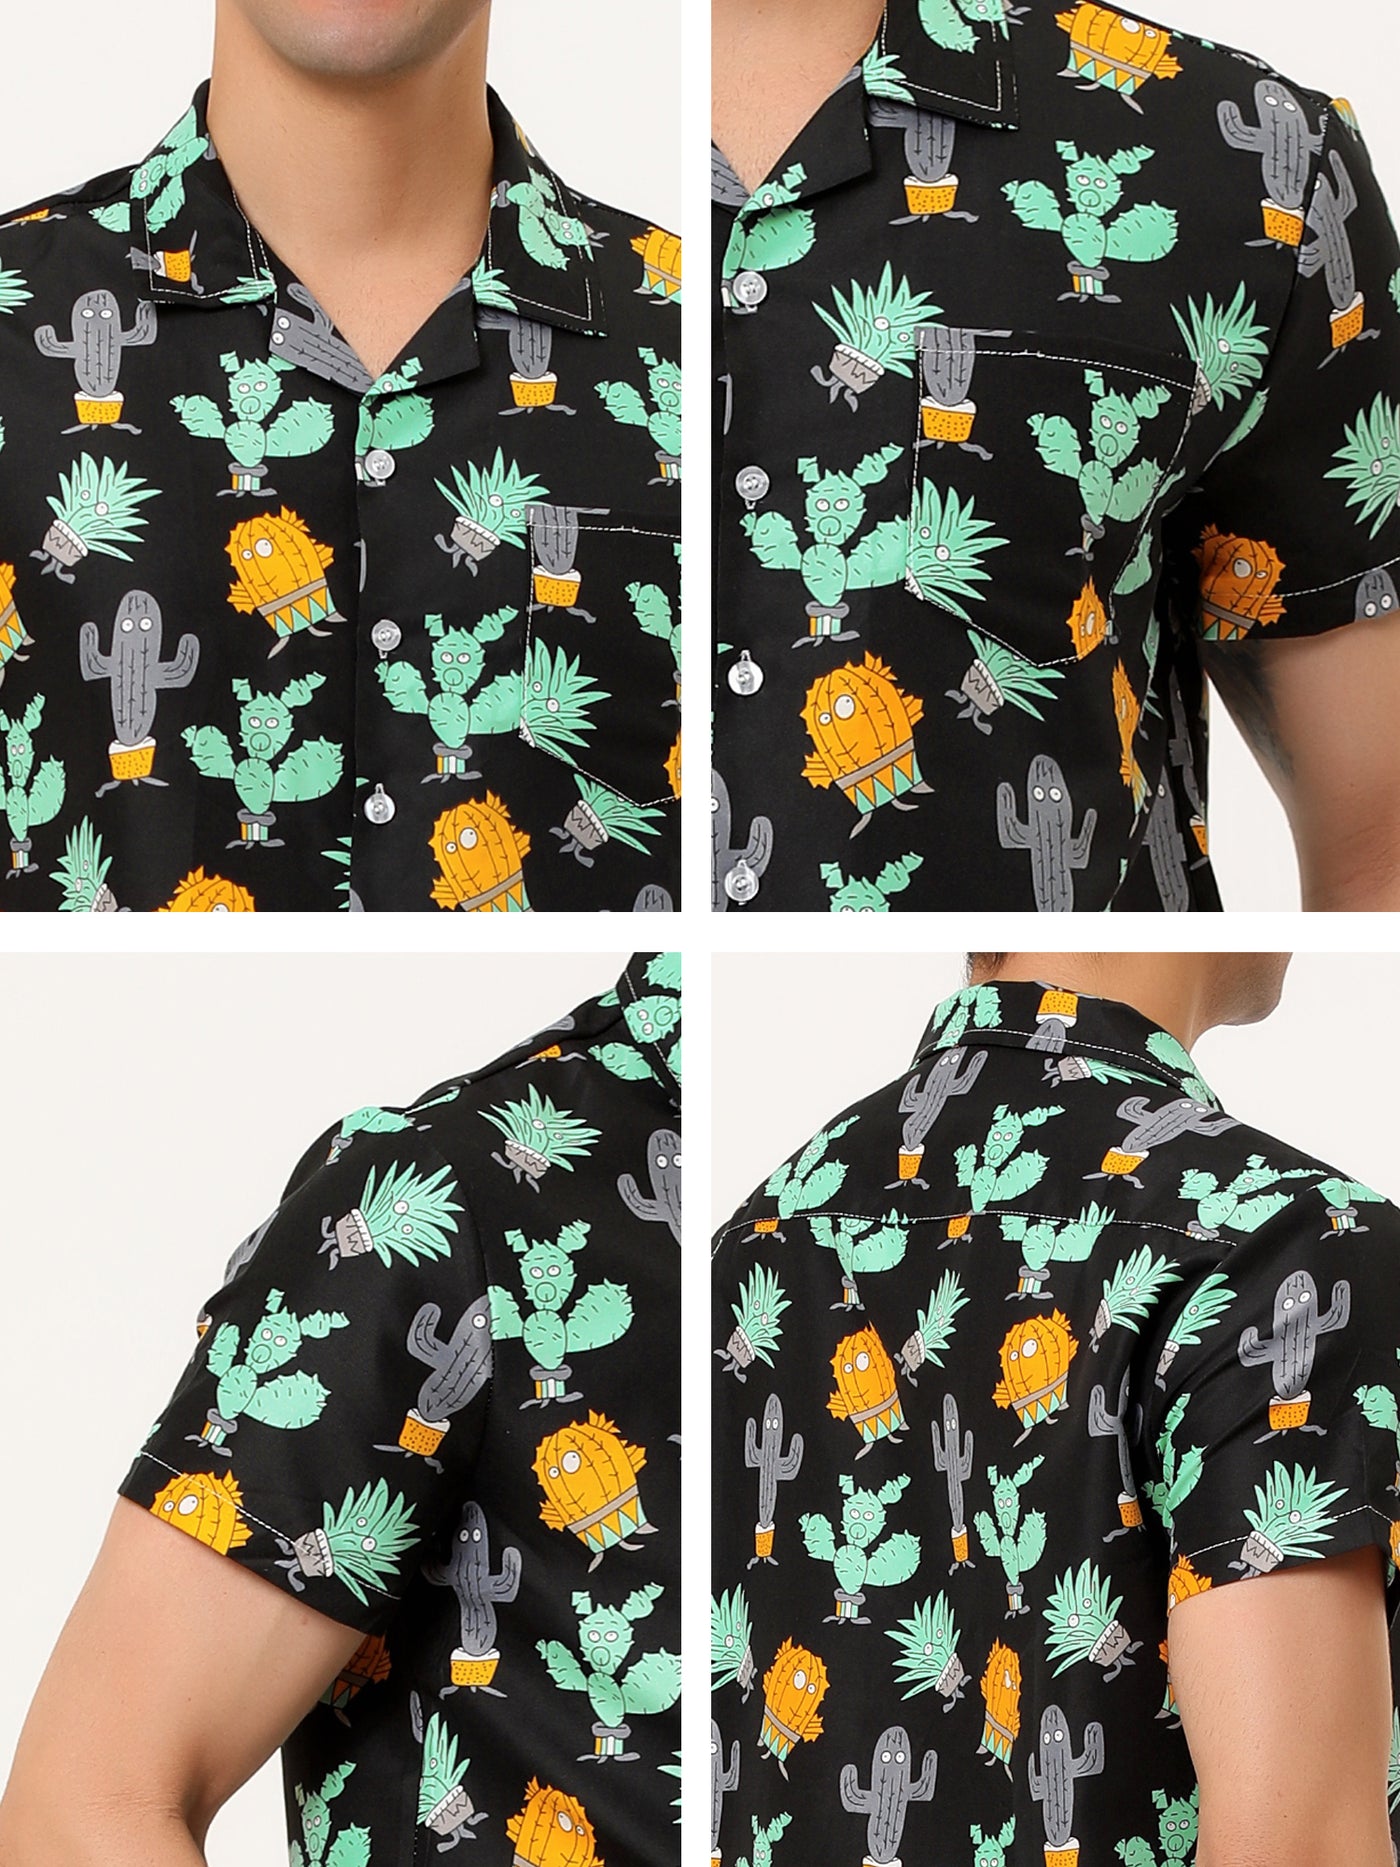 Bublédon Short Sleeve Button Summer Hawaiian Printed Shirt